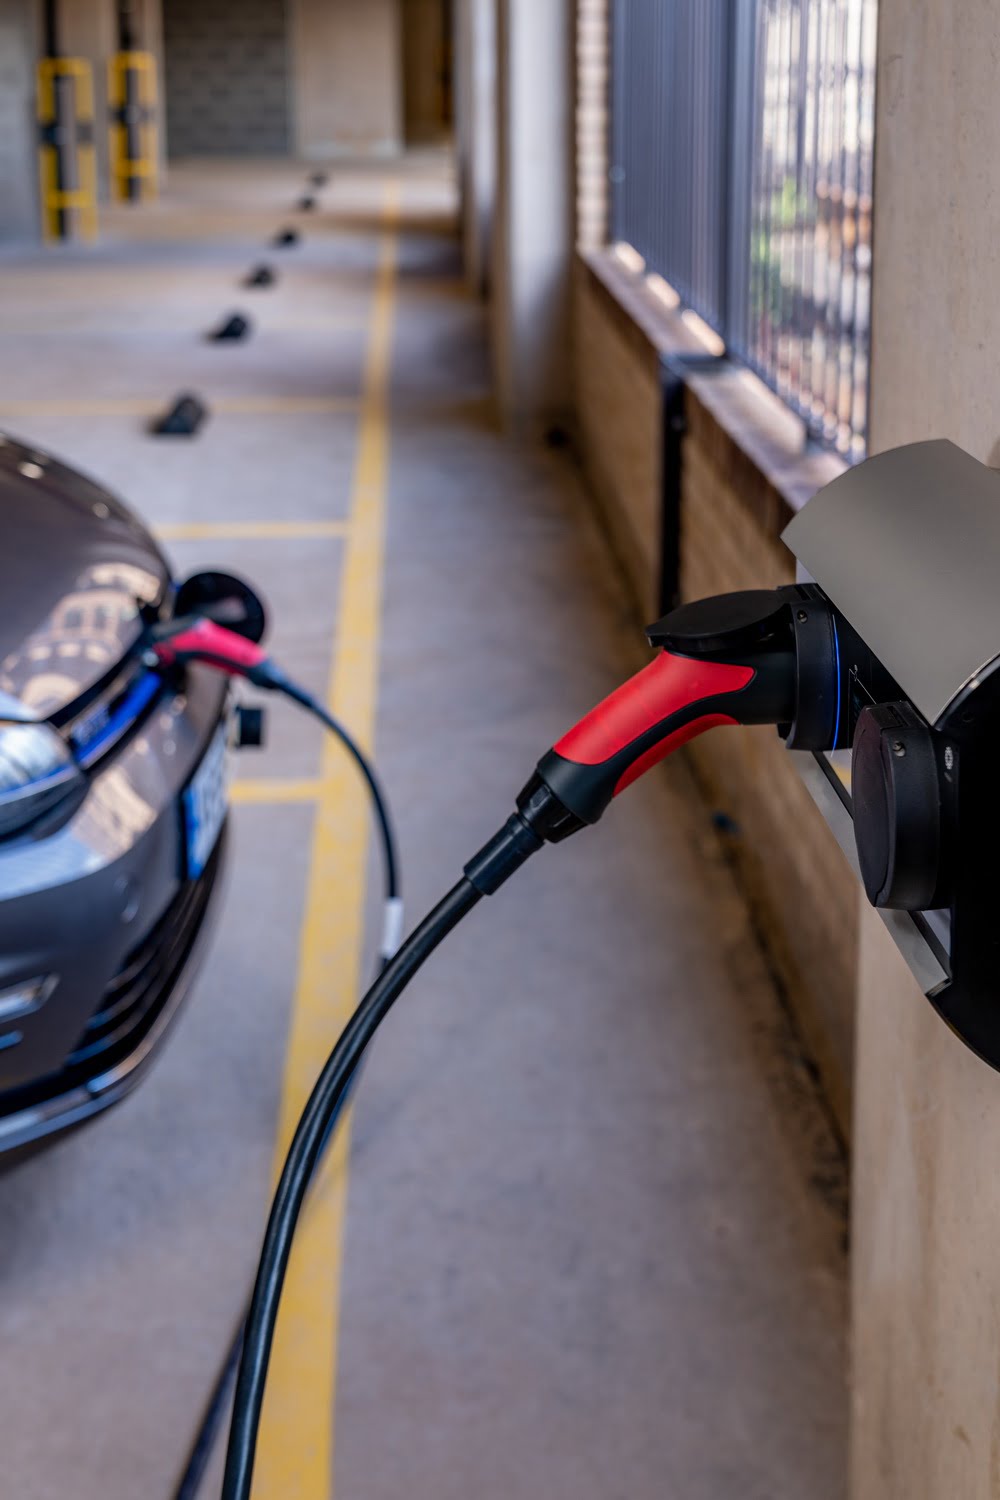 charging car in car park